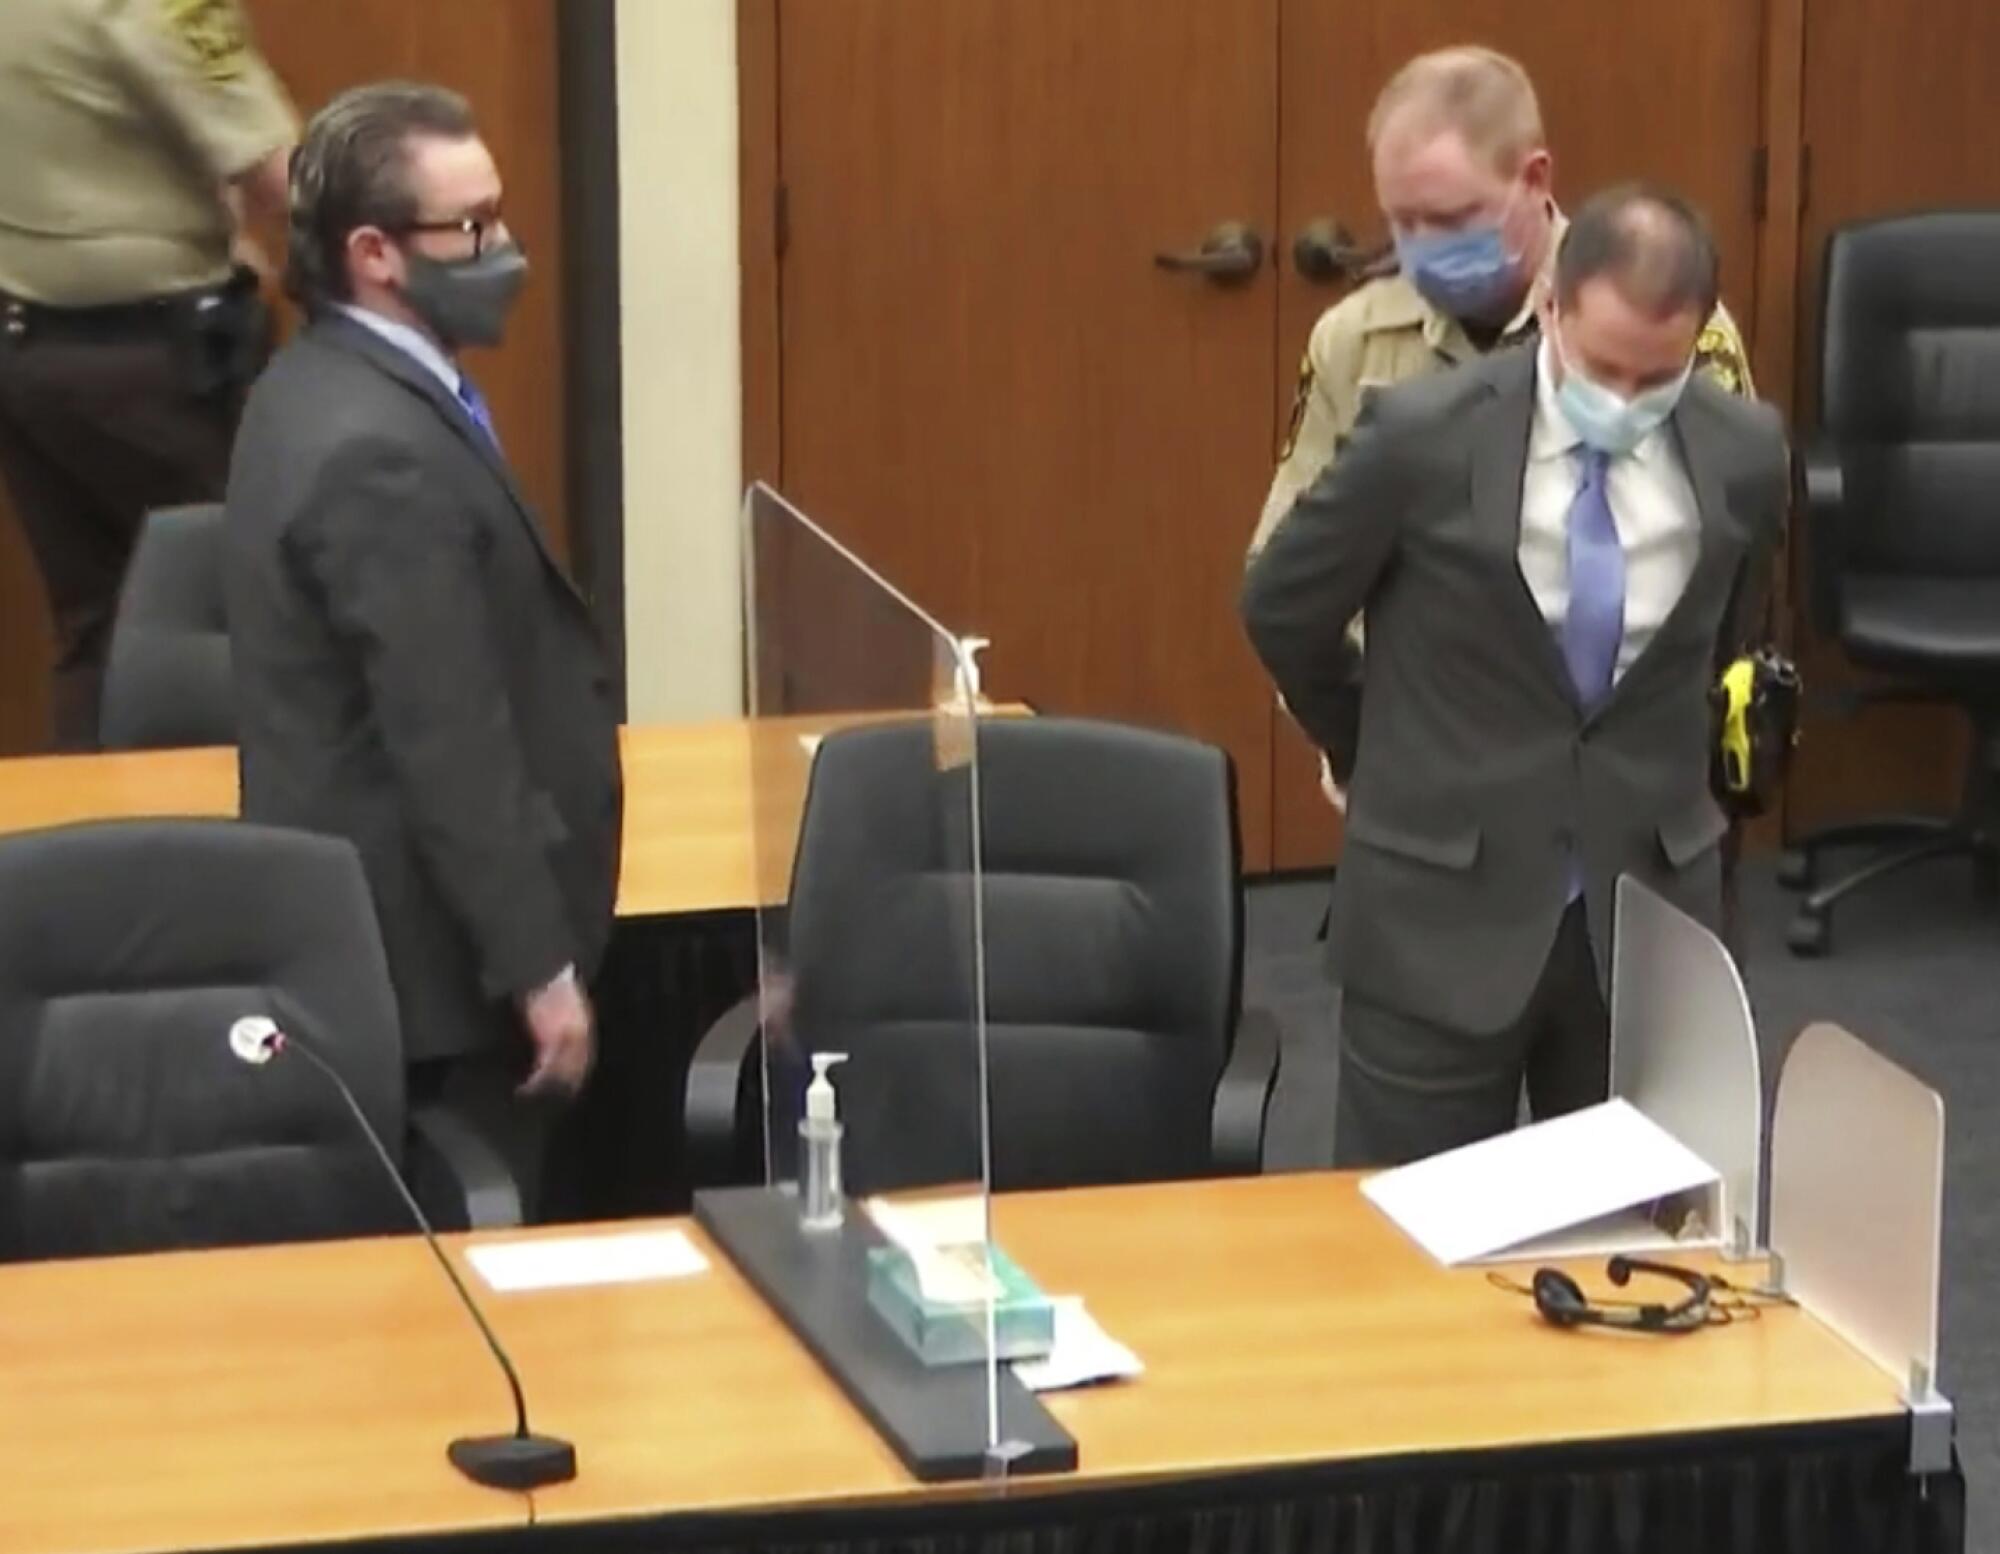 Derek Chauvin is handcuffed in court